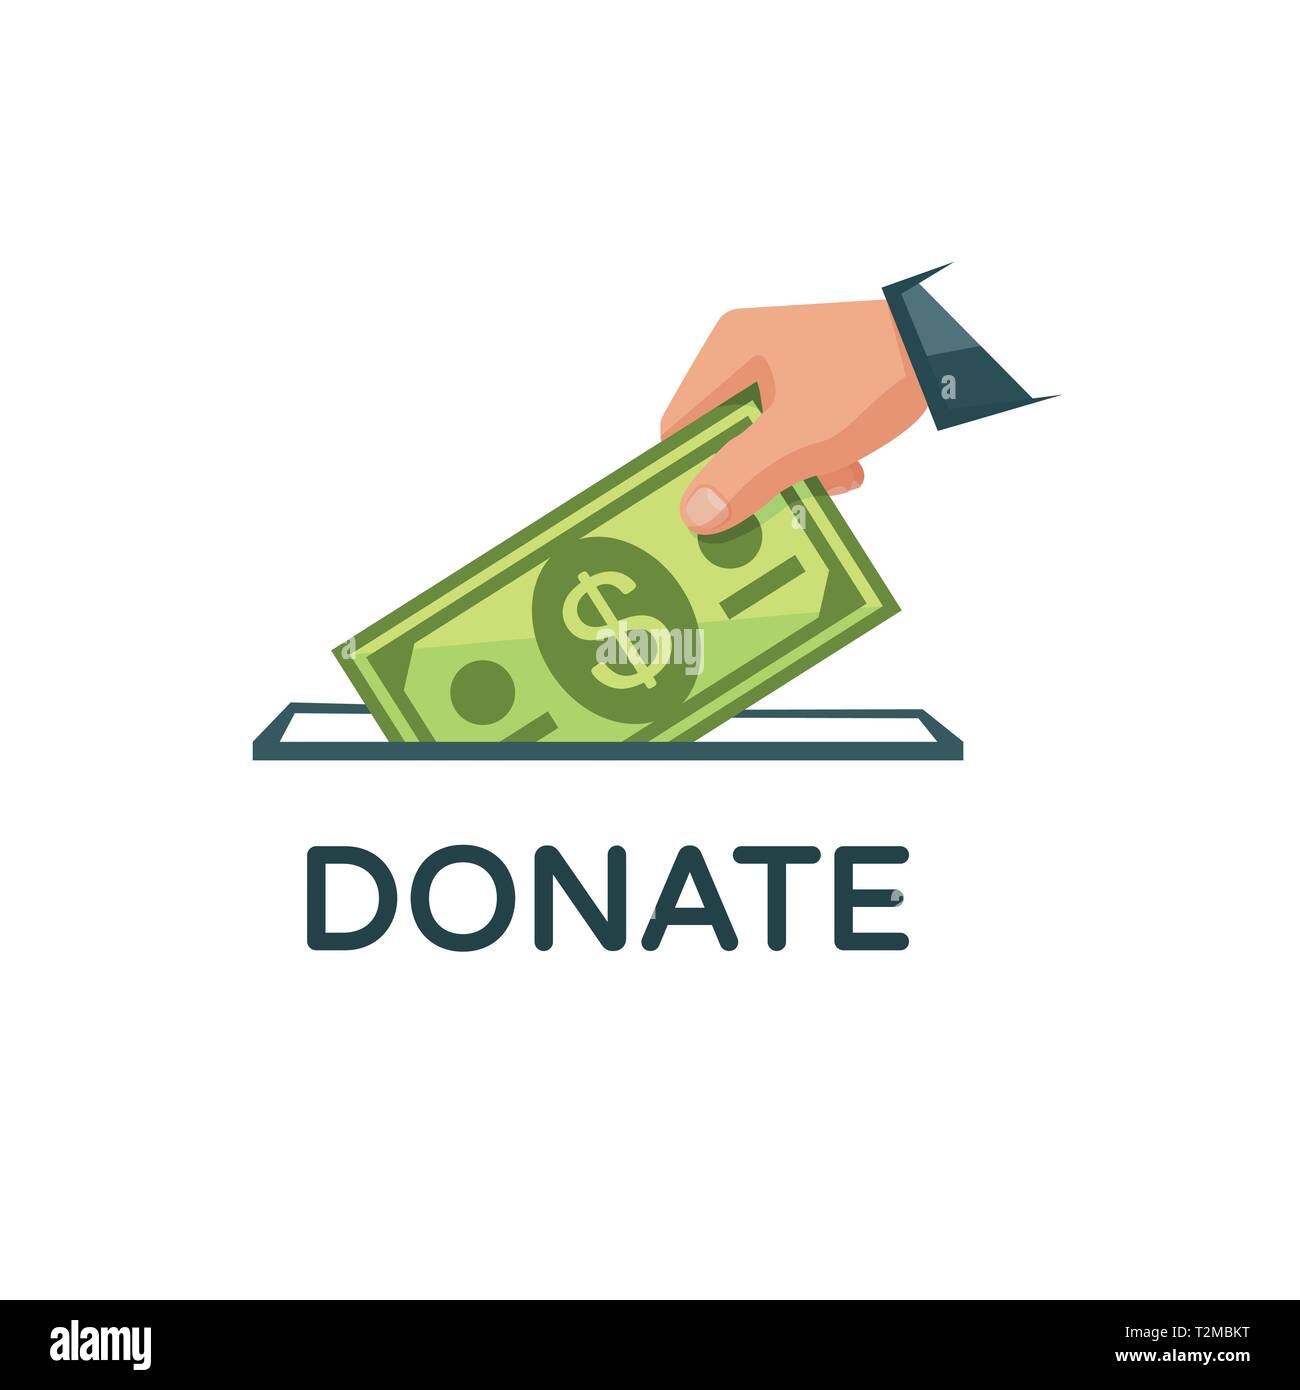 Подарок донат. Изображение для доната. Деньги донат. Донат иллюстрация. Донат пожертвование.